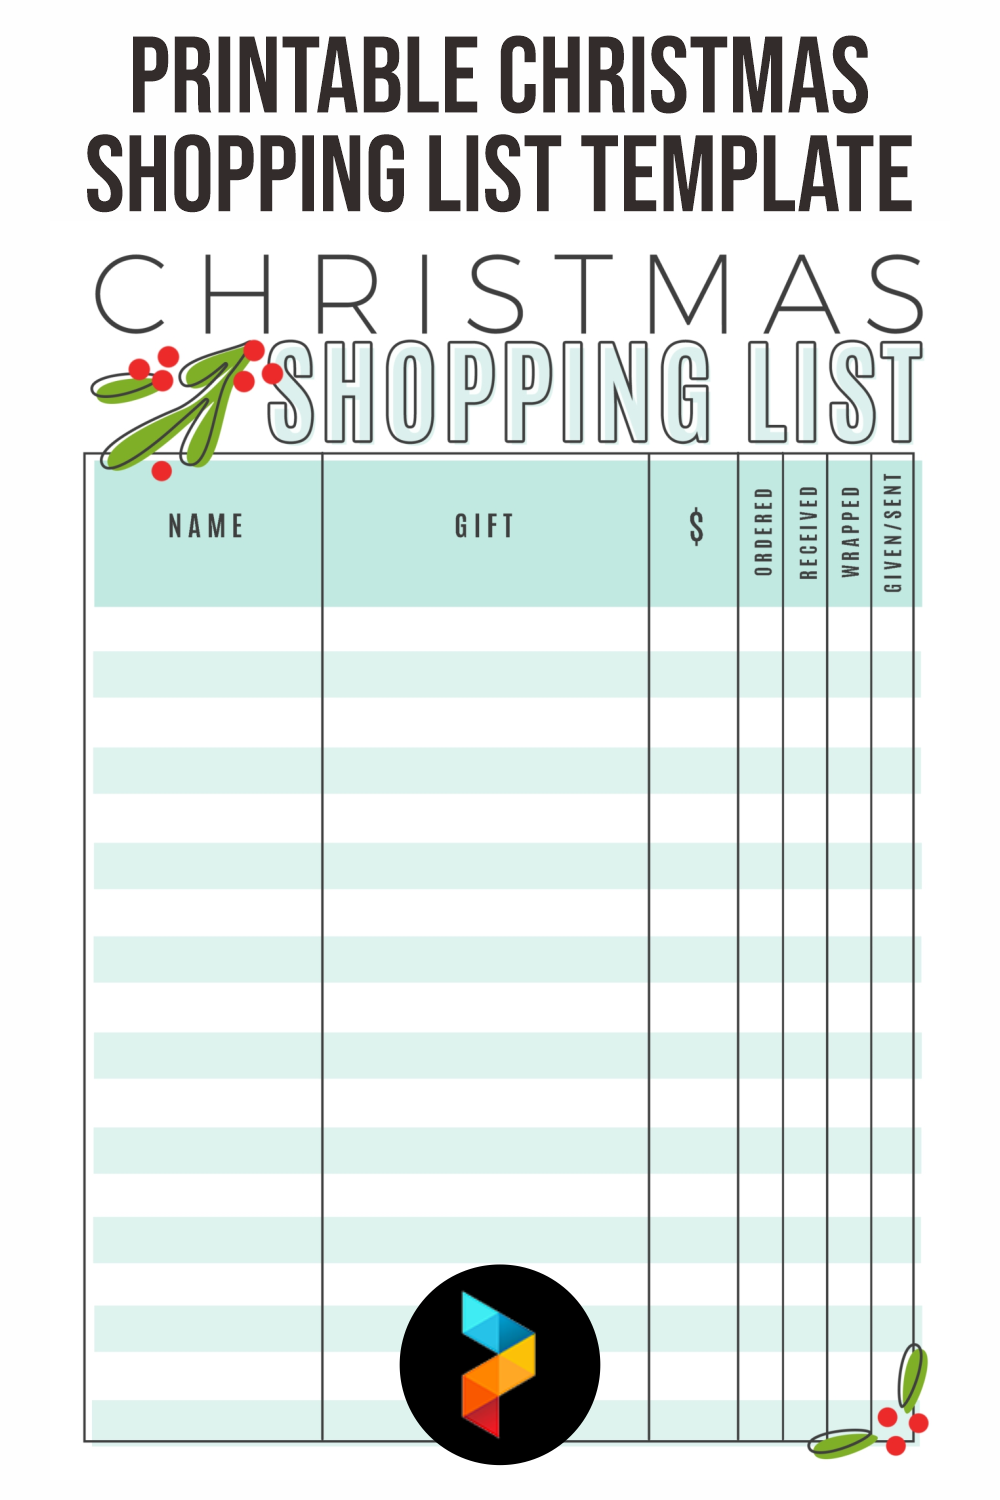 Printable Christmas Shopping List Template